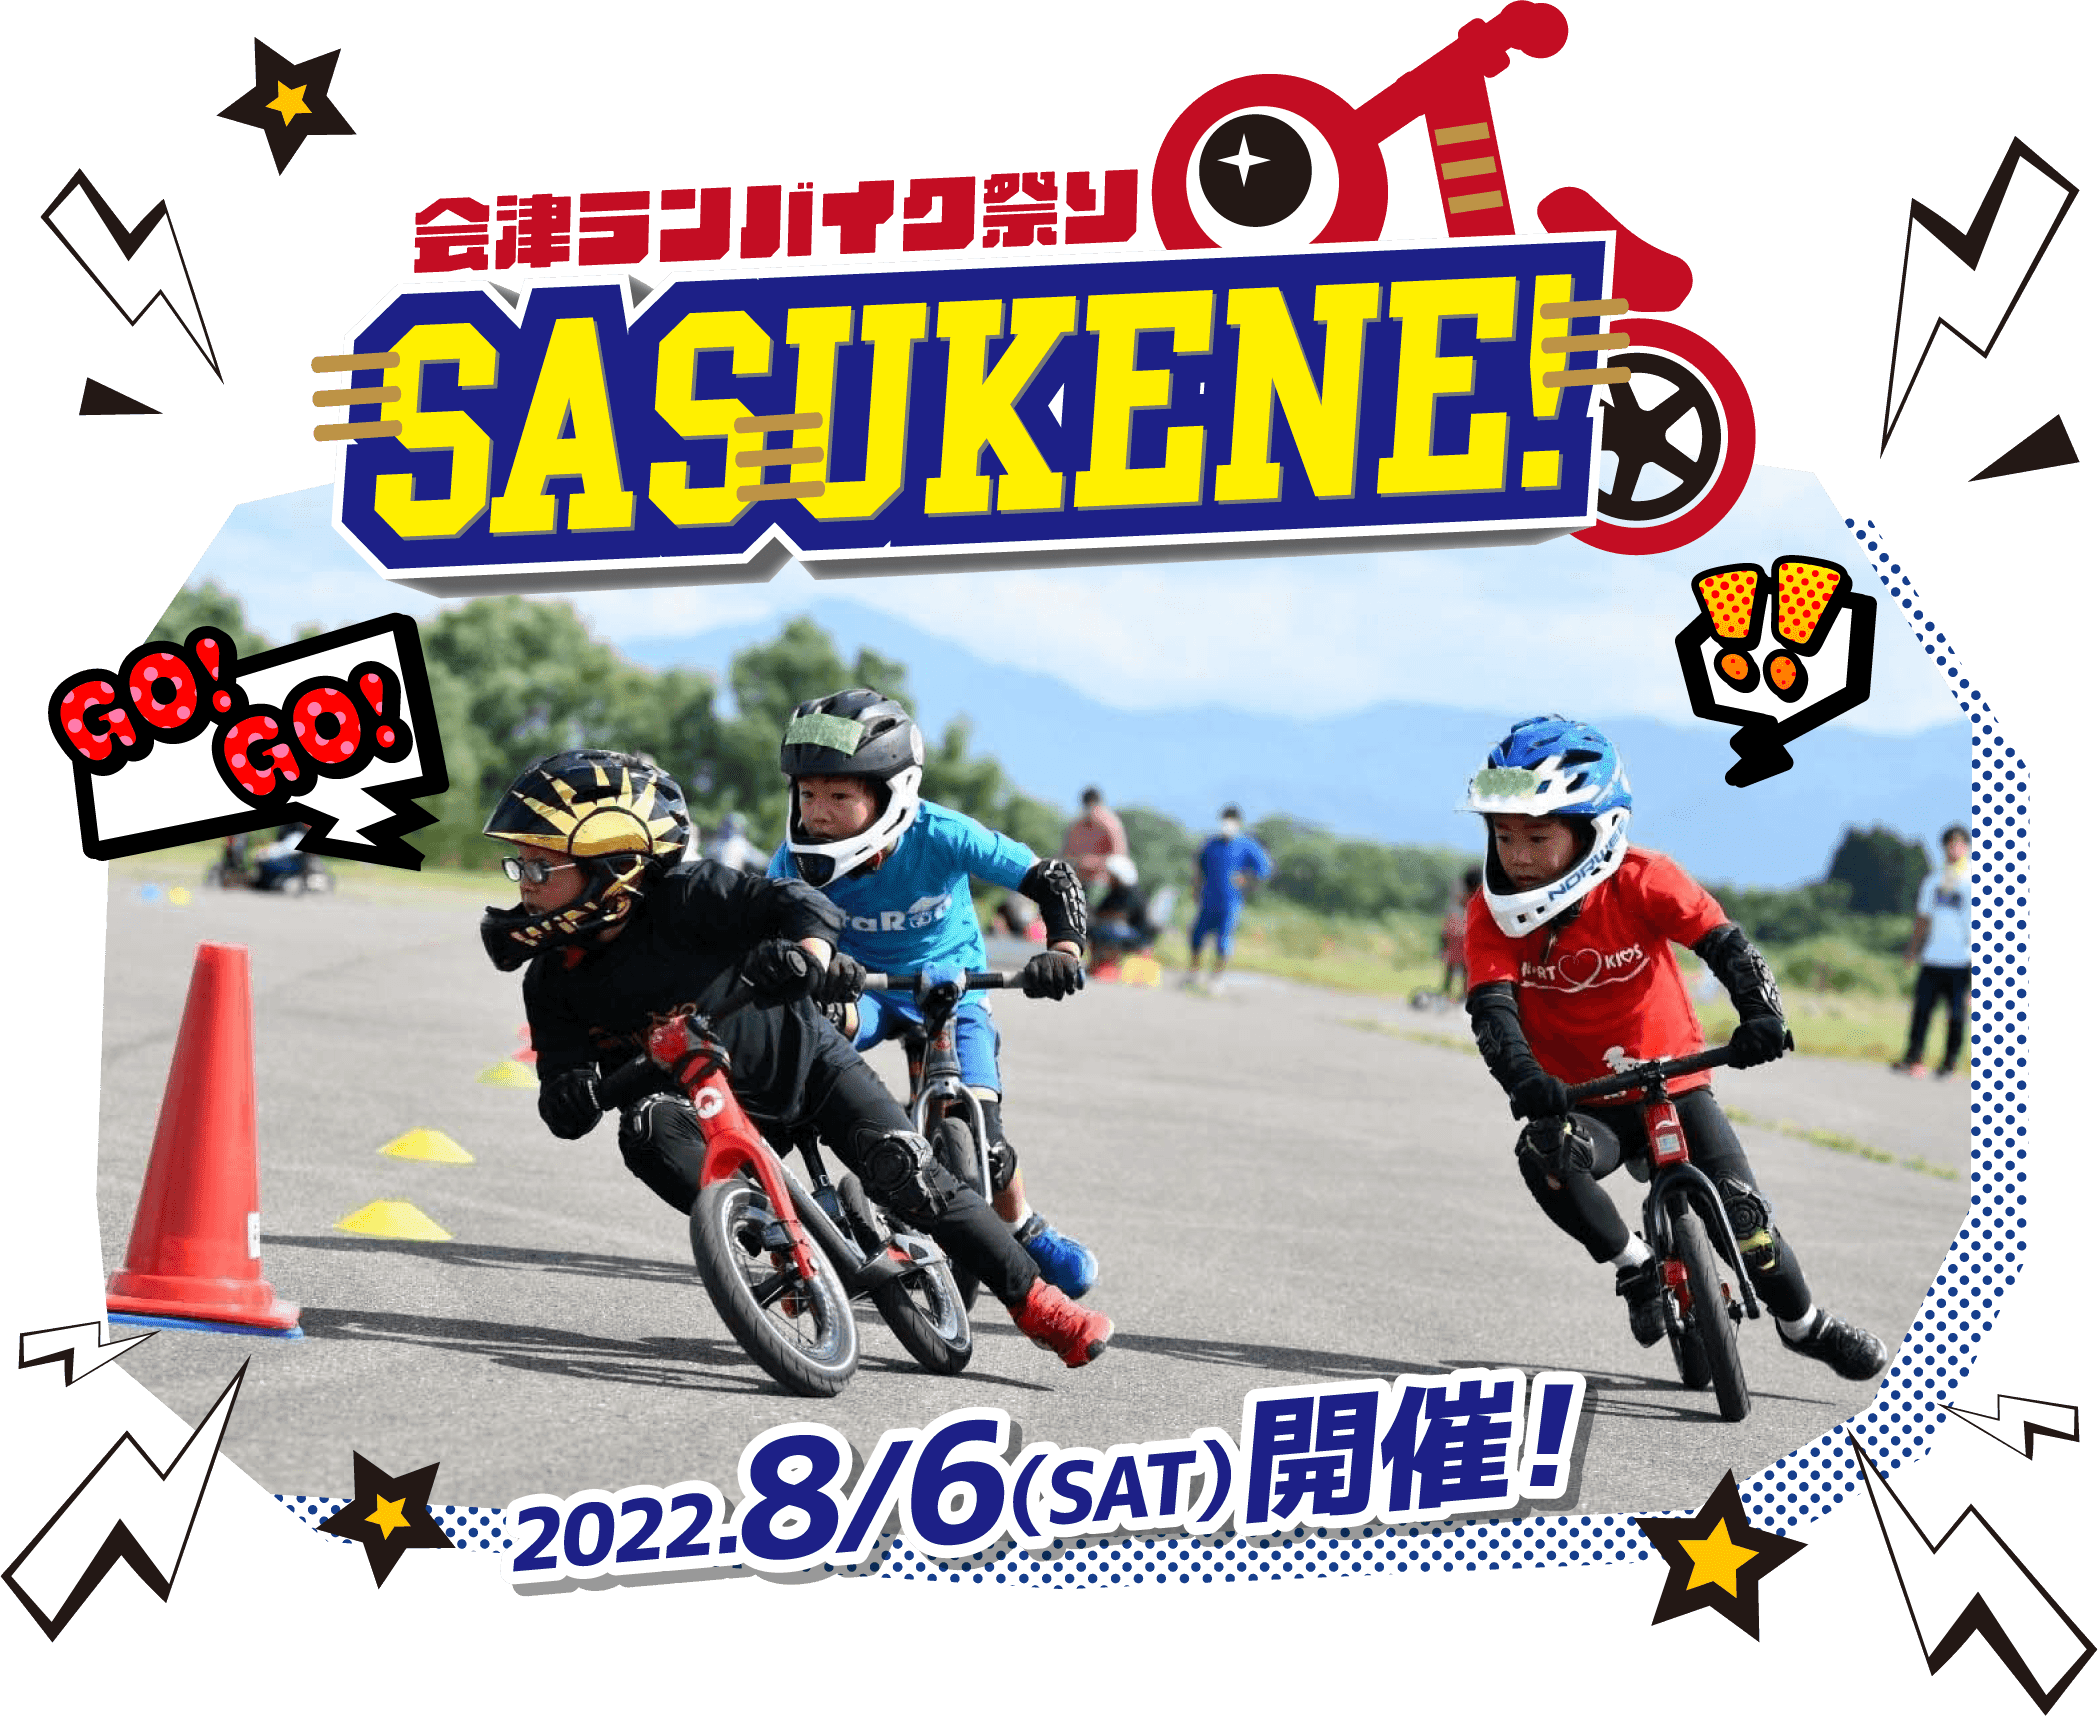 会津ランバイク祭り SASUKENE!